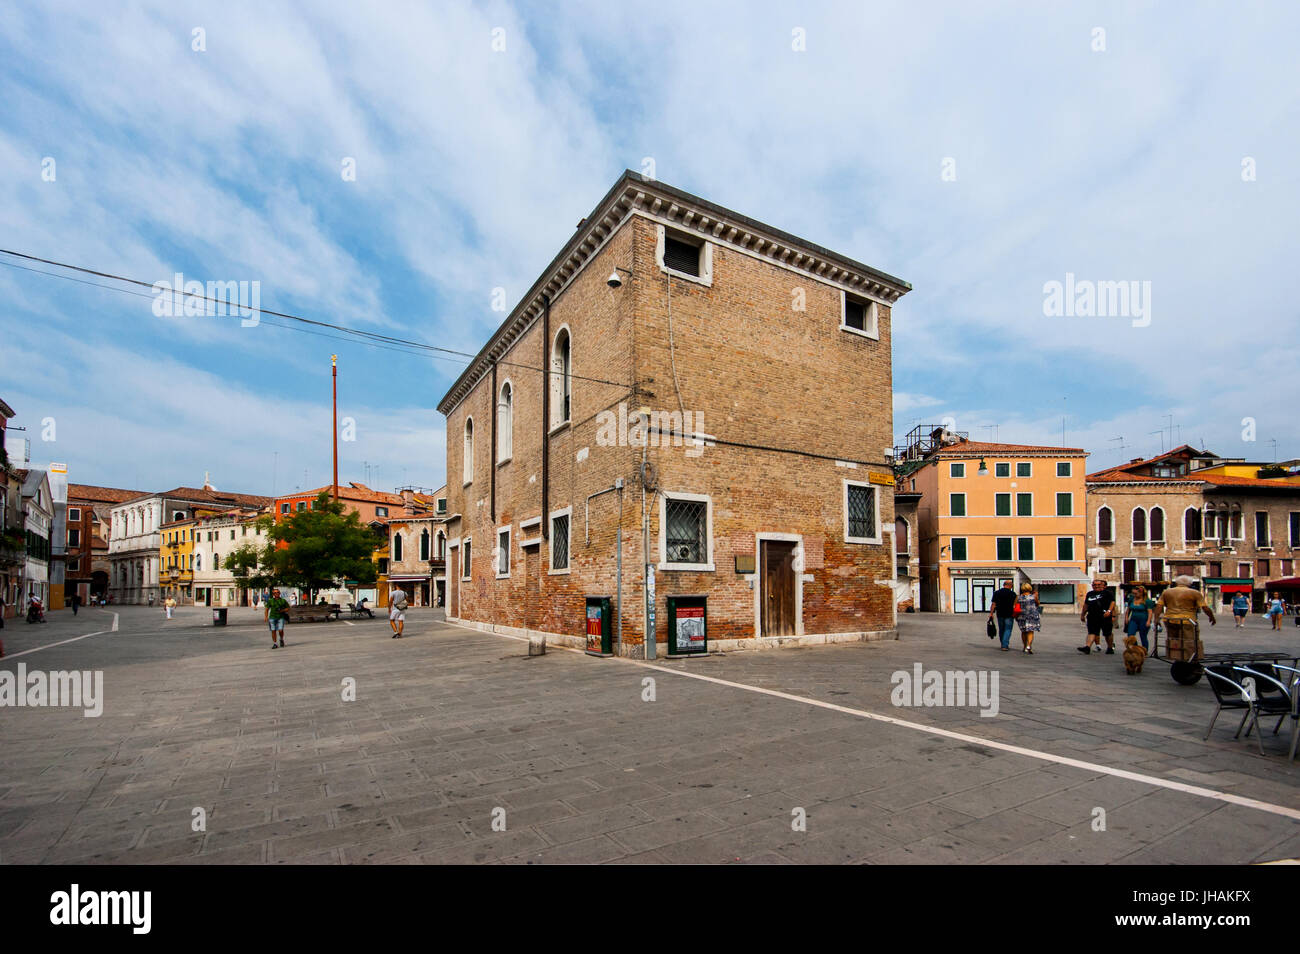 Imágenes de menor conocida Venecia, Italia: un antiguo palacio en medio de un "campo" Plaza en la zona de Dorsoduro Foto de stock